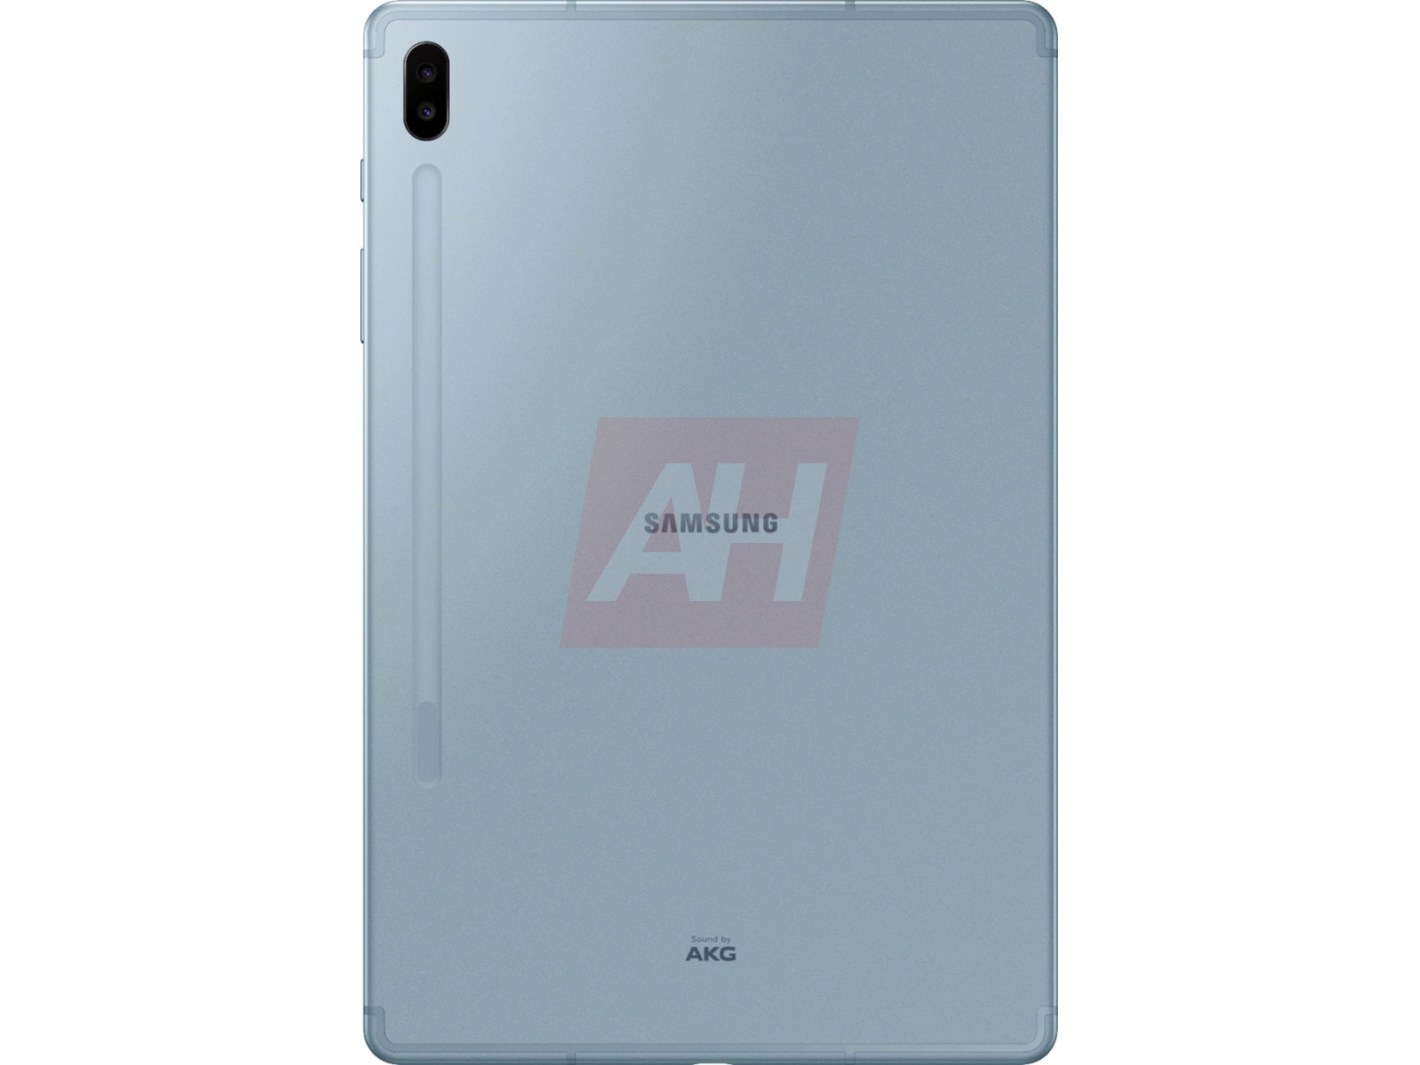 Samsung Galaxy Tab S6 Leak Blue 2 1420x1065 1